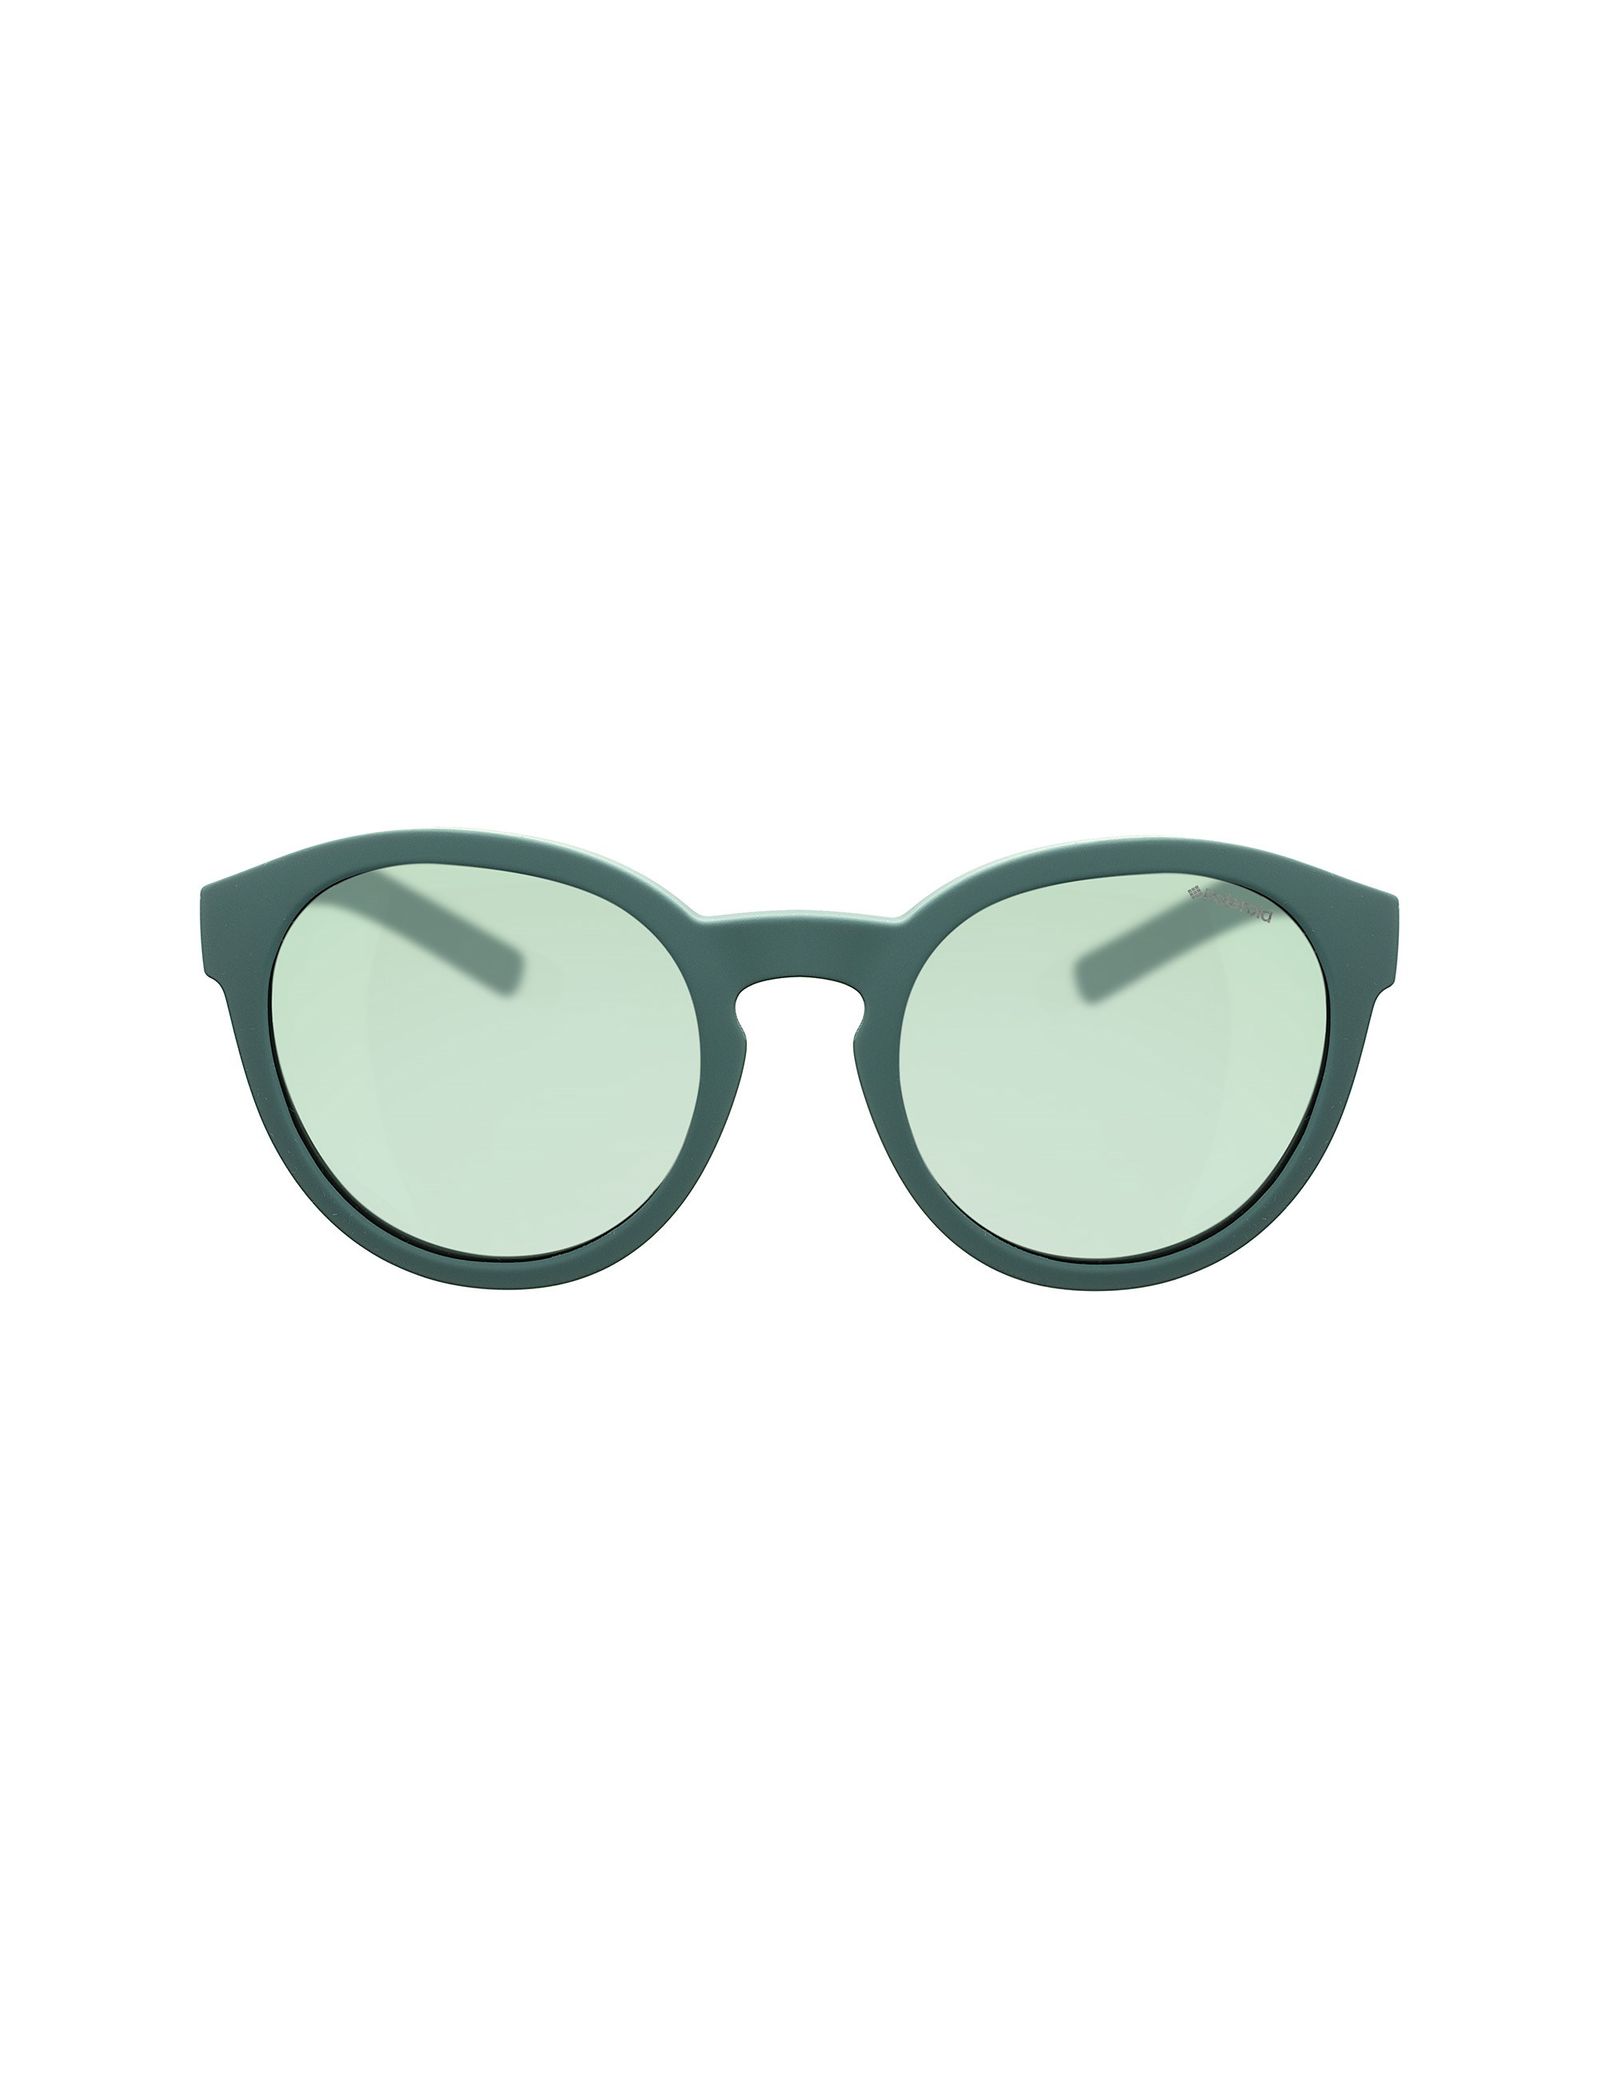 عینک آفتابی پنتوس بچگانه - پولاروید - سبز - 2